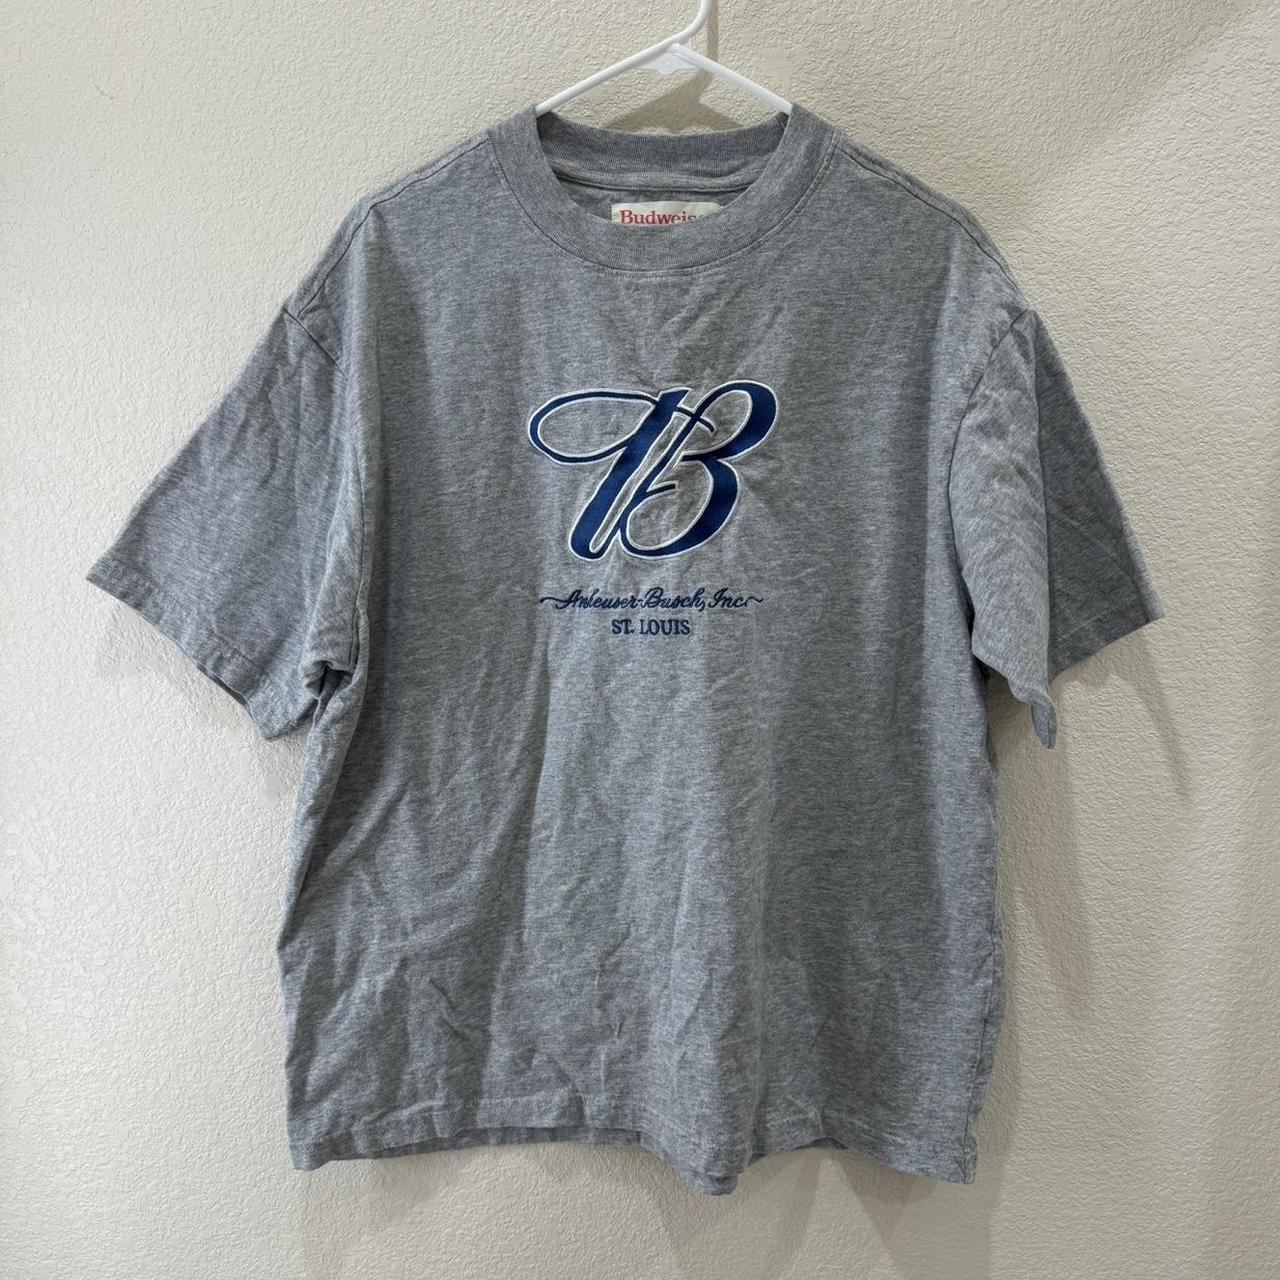 Budweiser By PacSun St. Louis T-Shirt